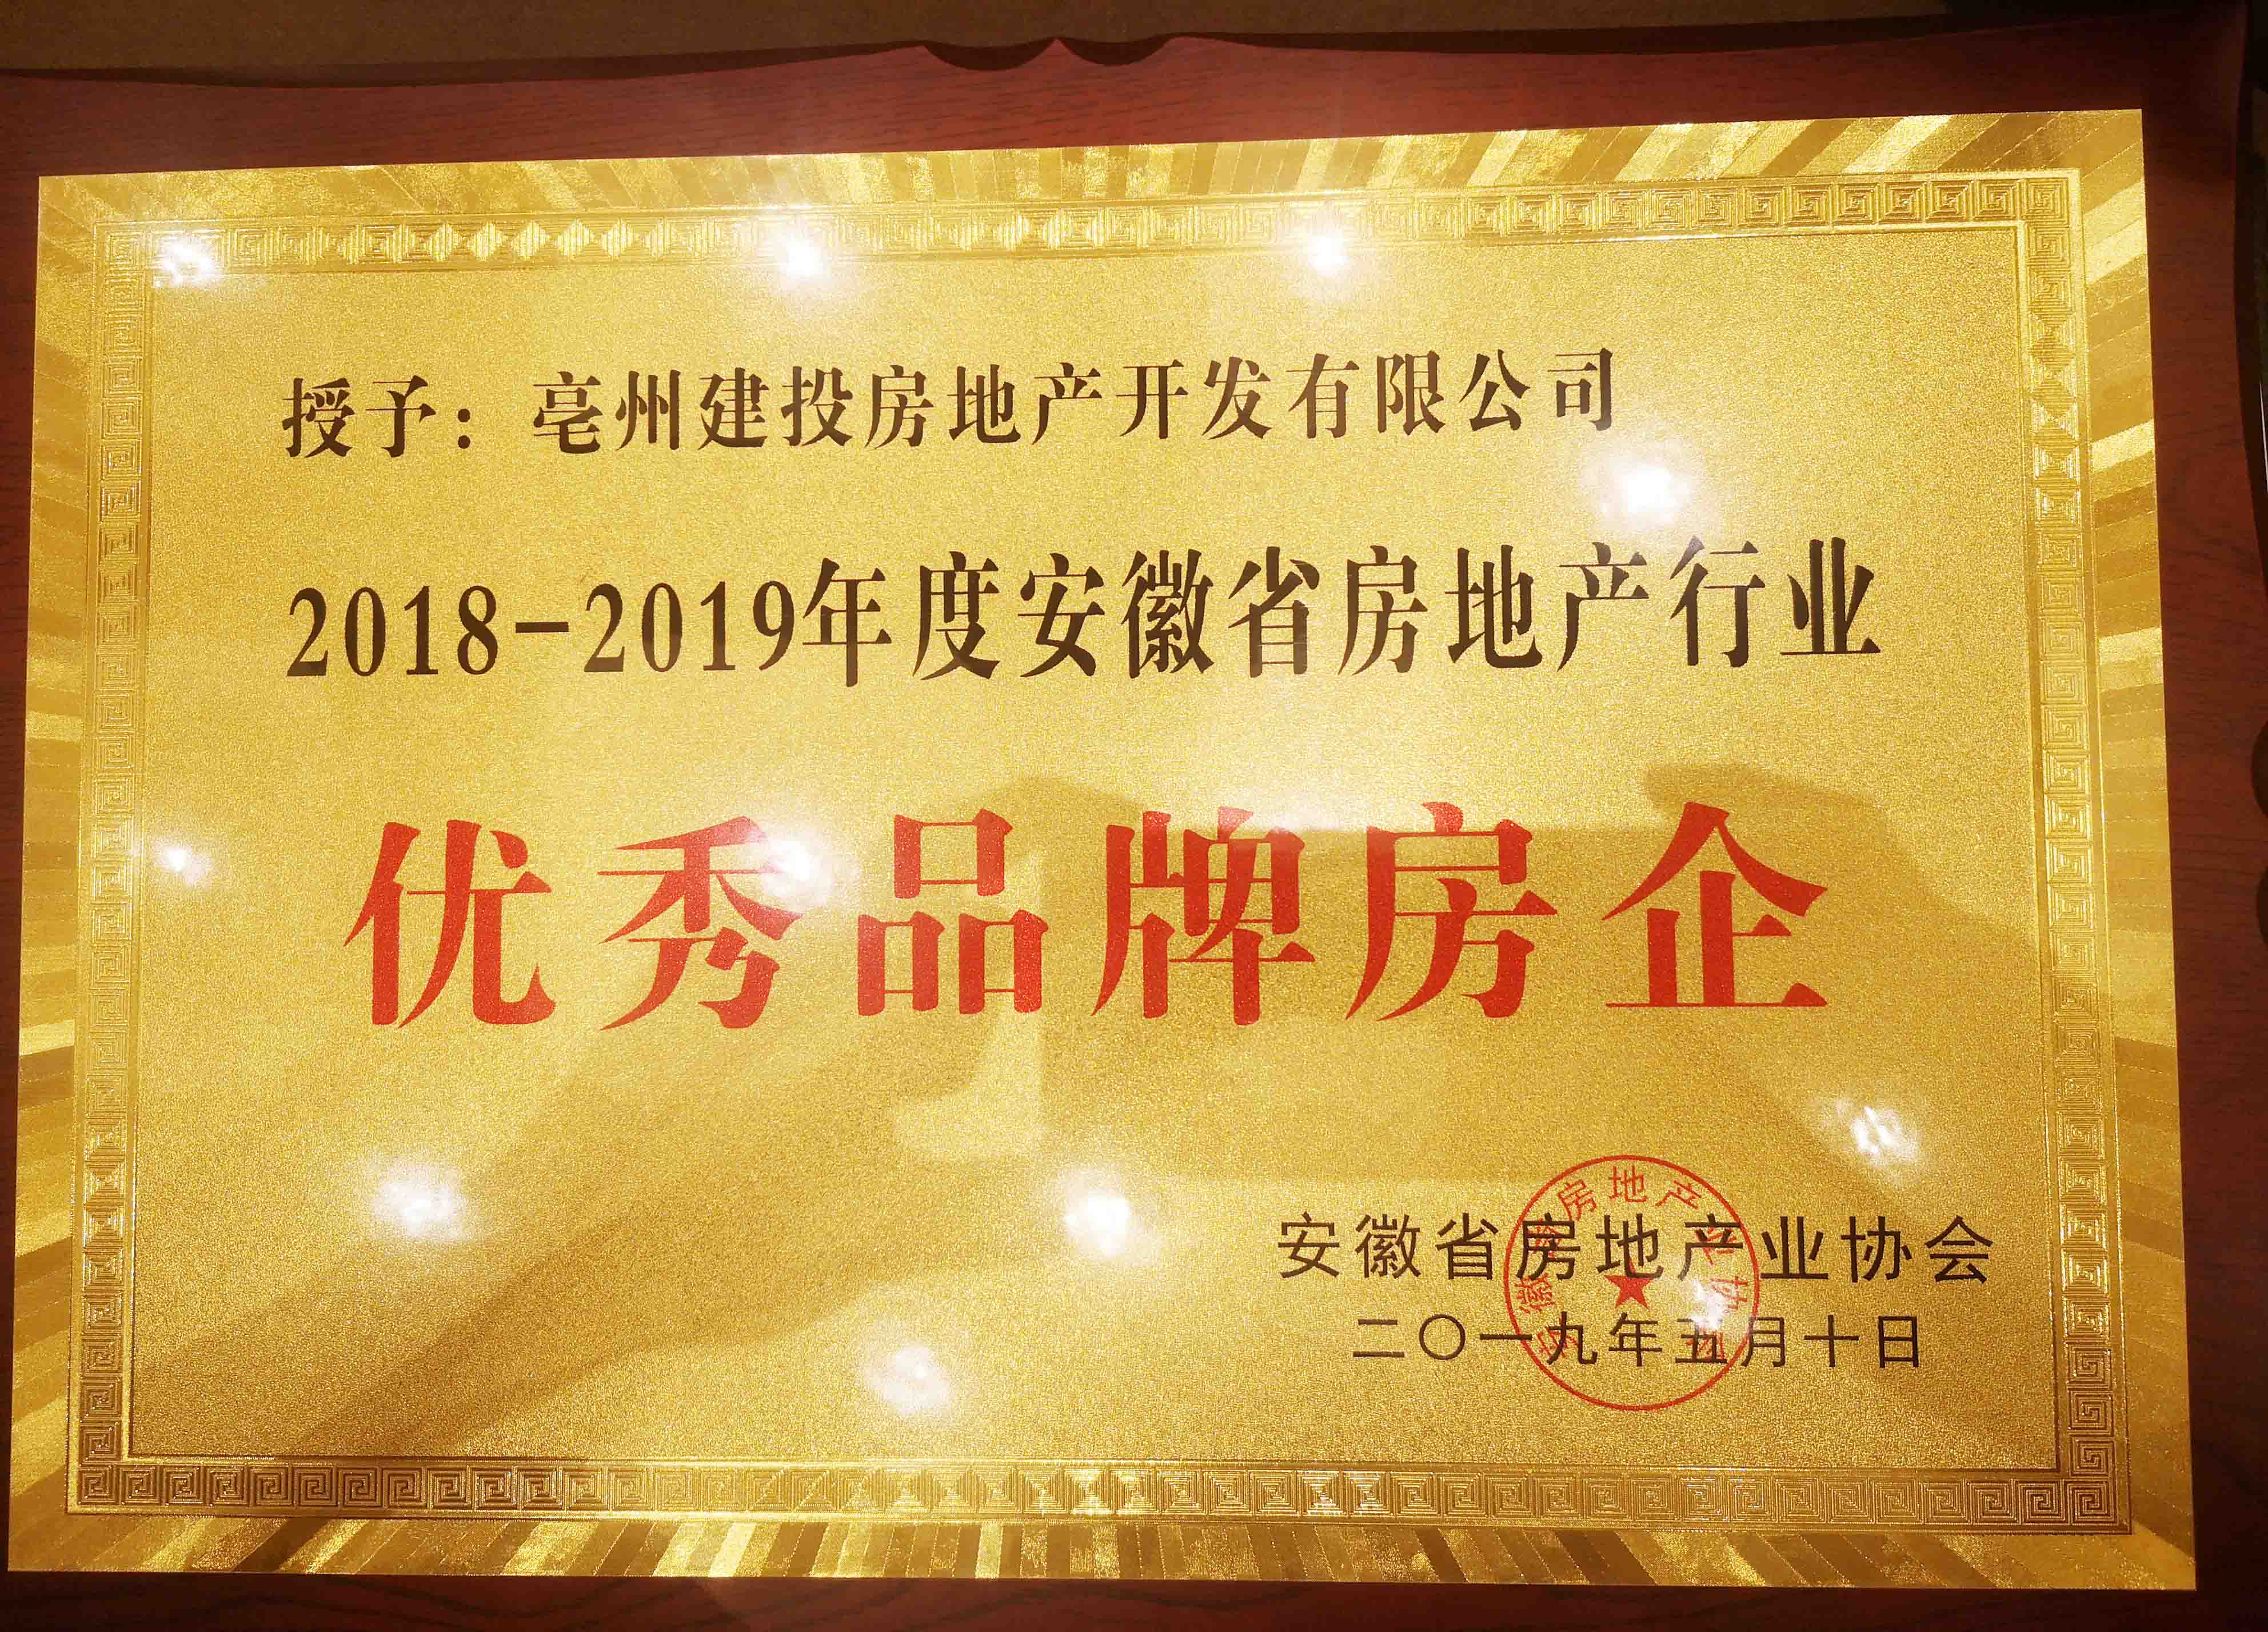 建投地产被授予“2018-2019年度安徽省房地产行业优秀品牌房企”